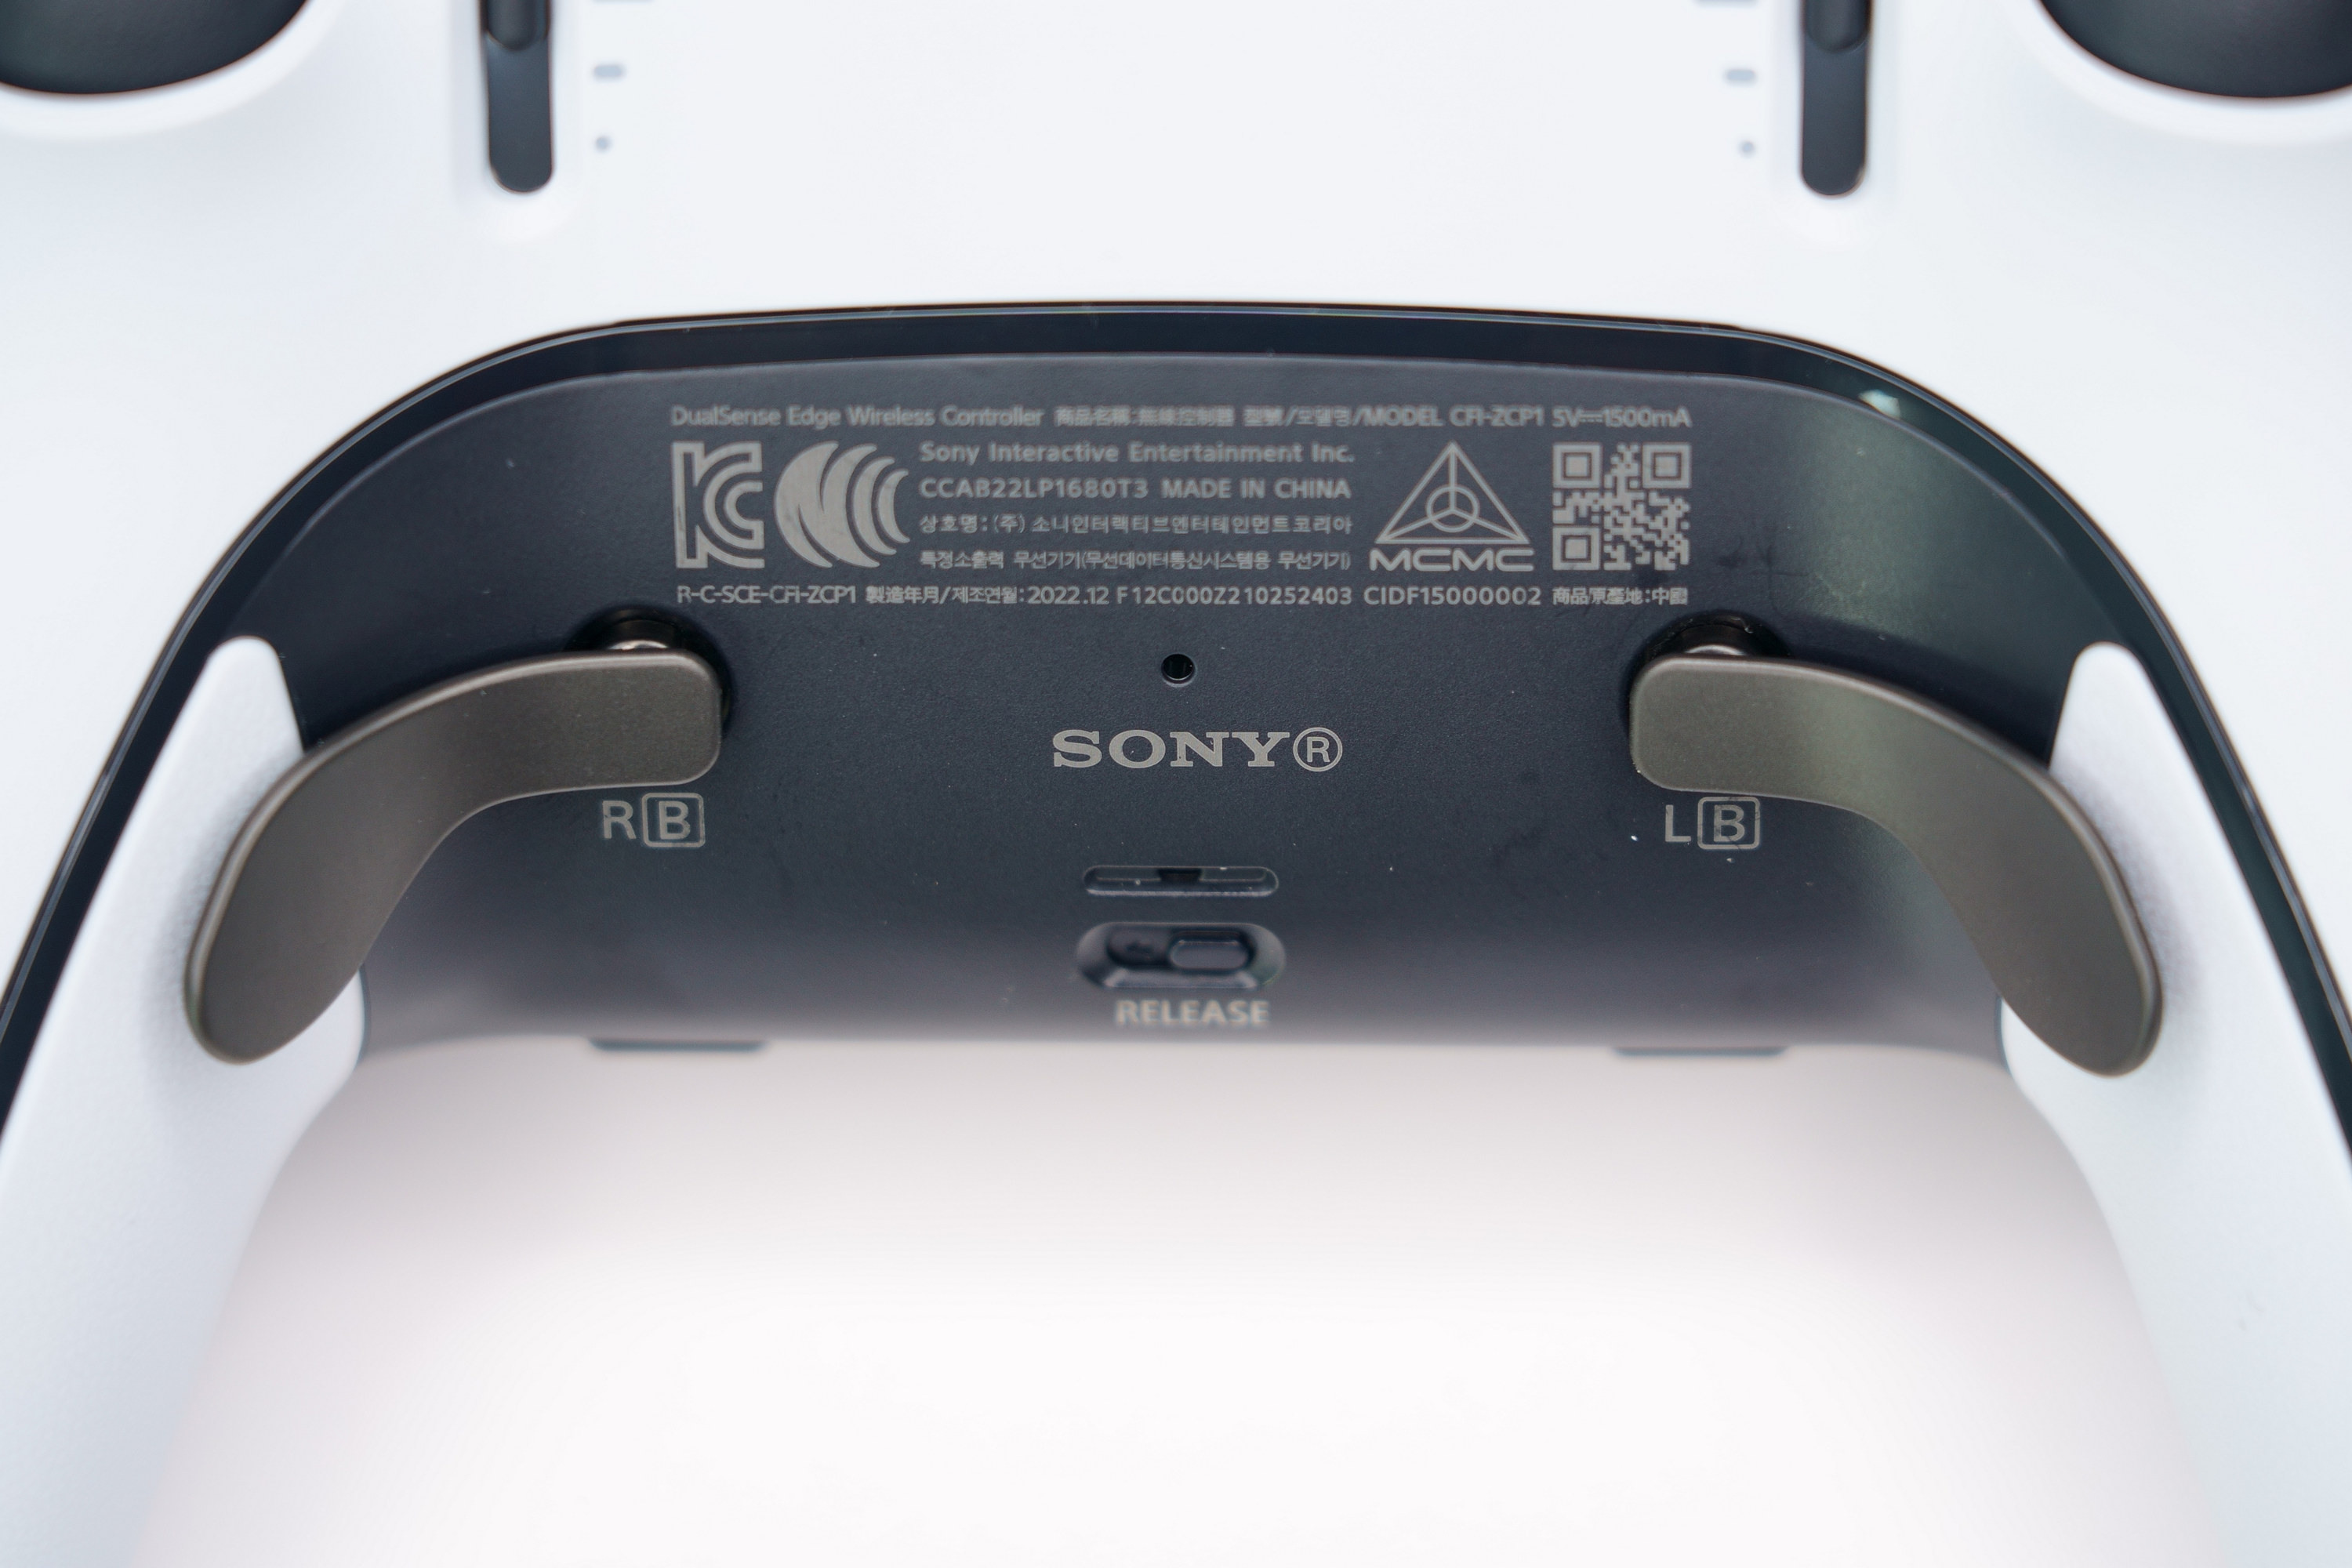 PS5 DualSense Edge 高效能控制器一手开箱 丰富自订功能满足各类型玩家需求插图26